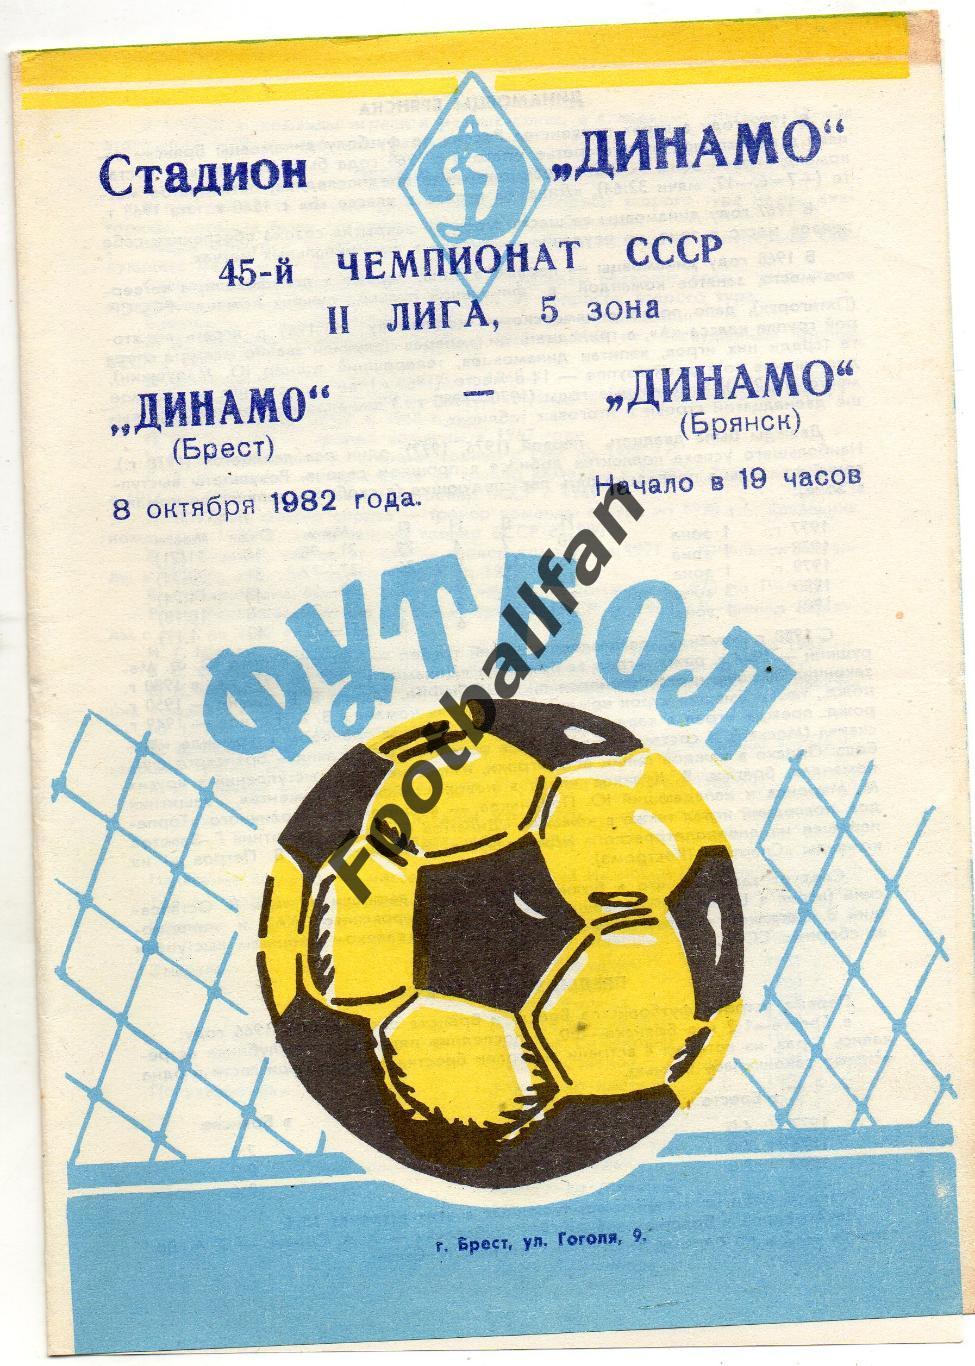 Динамо Брест - Динамо Брянск 08.10.1982